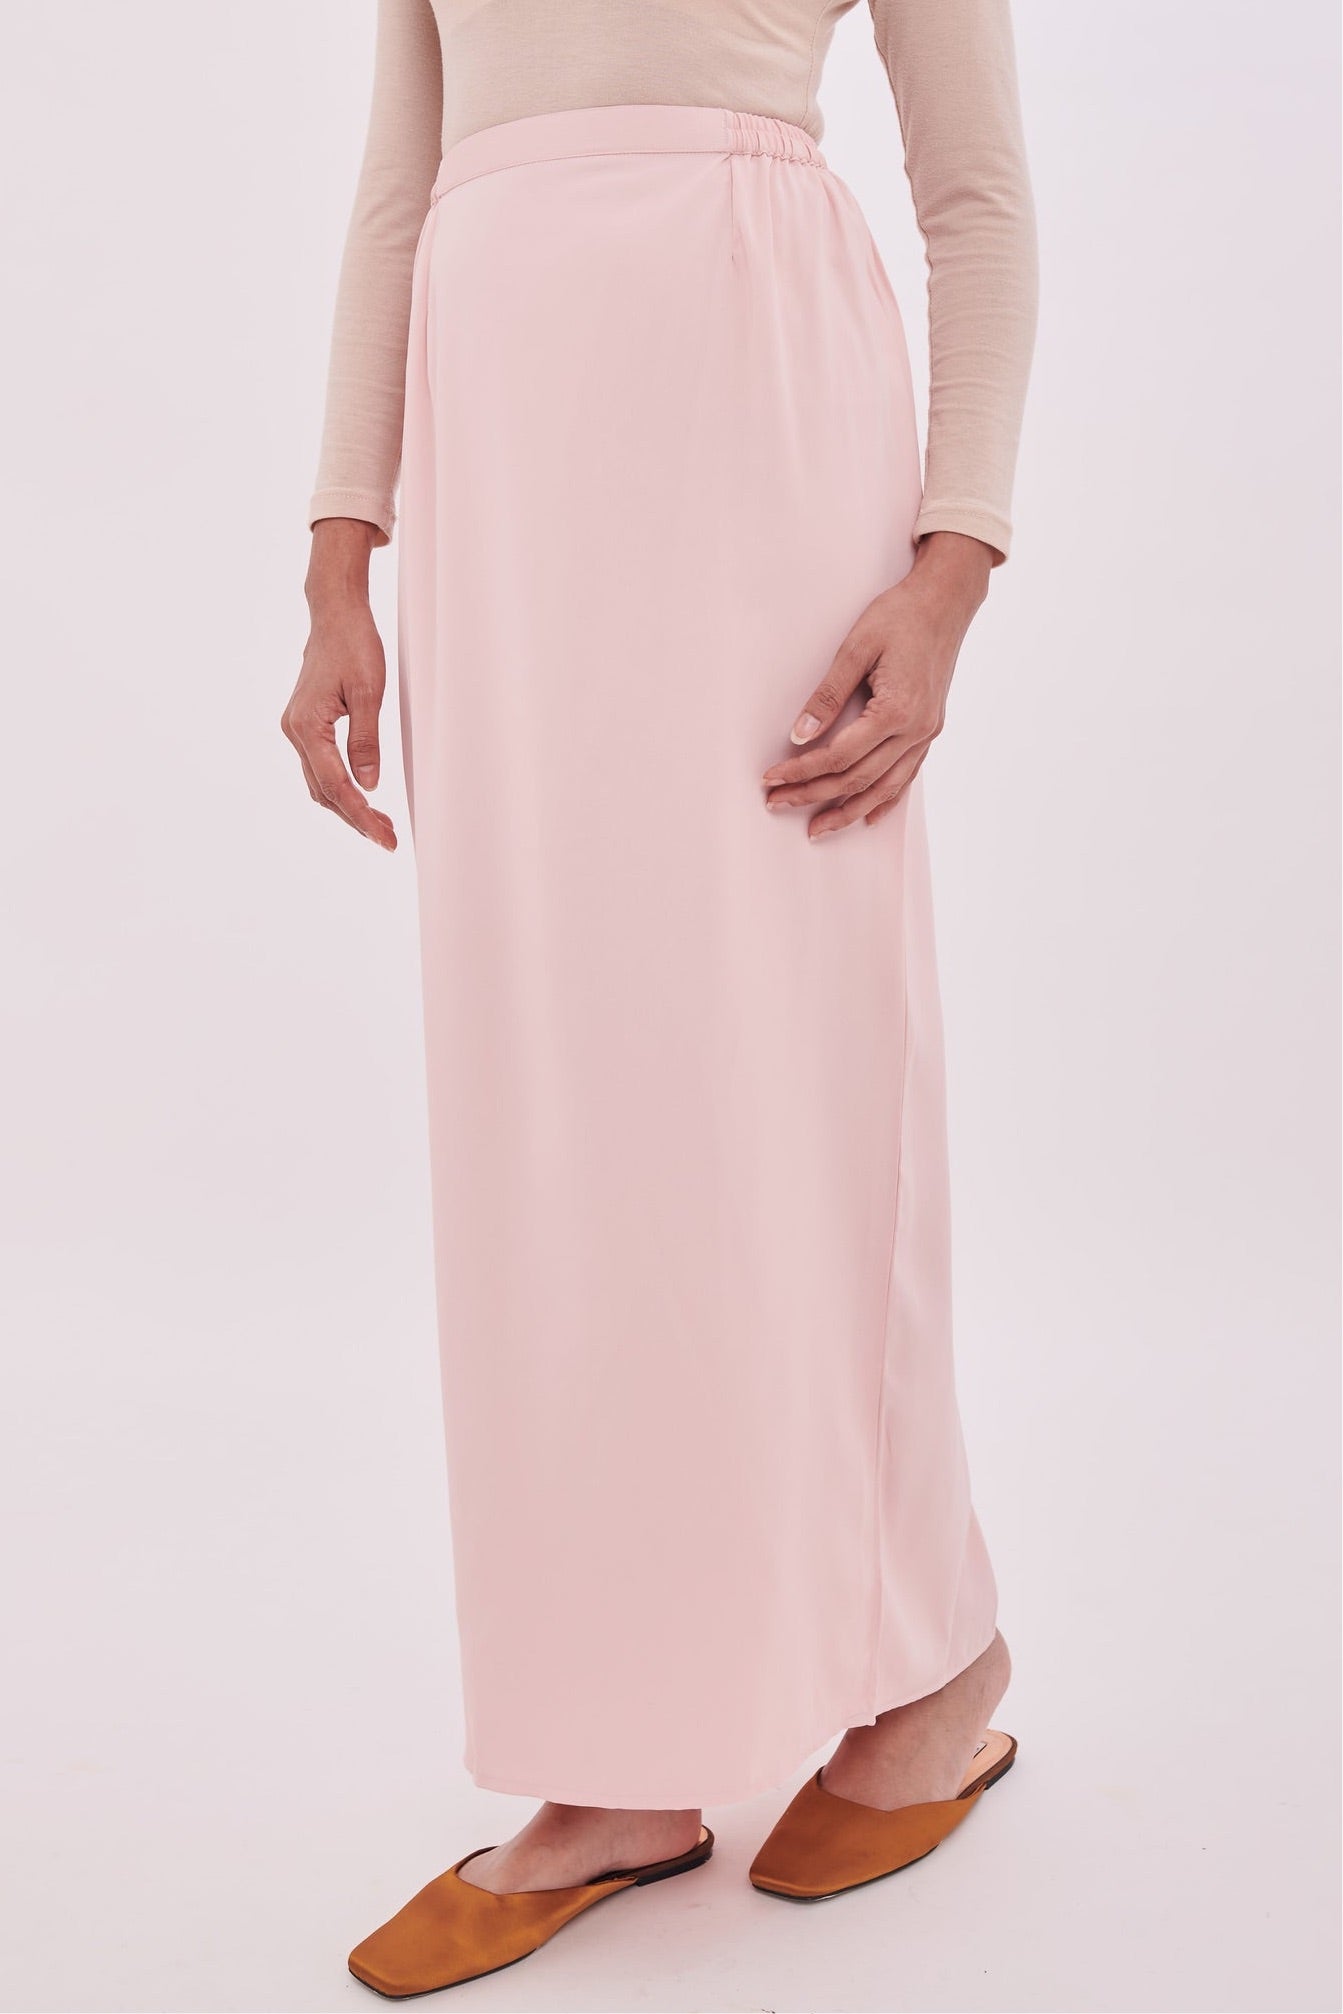 Edza Skirt in Soft Pink